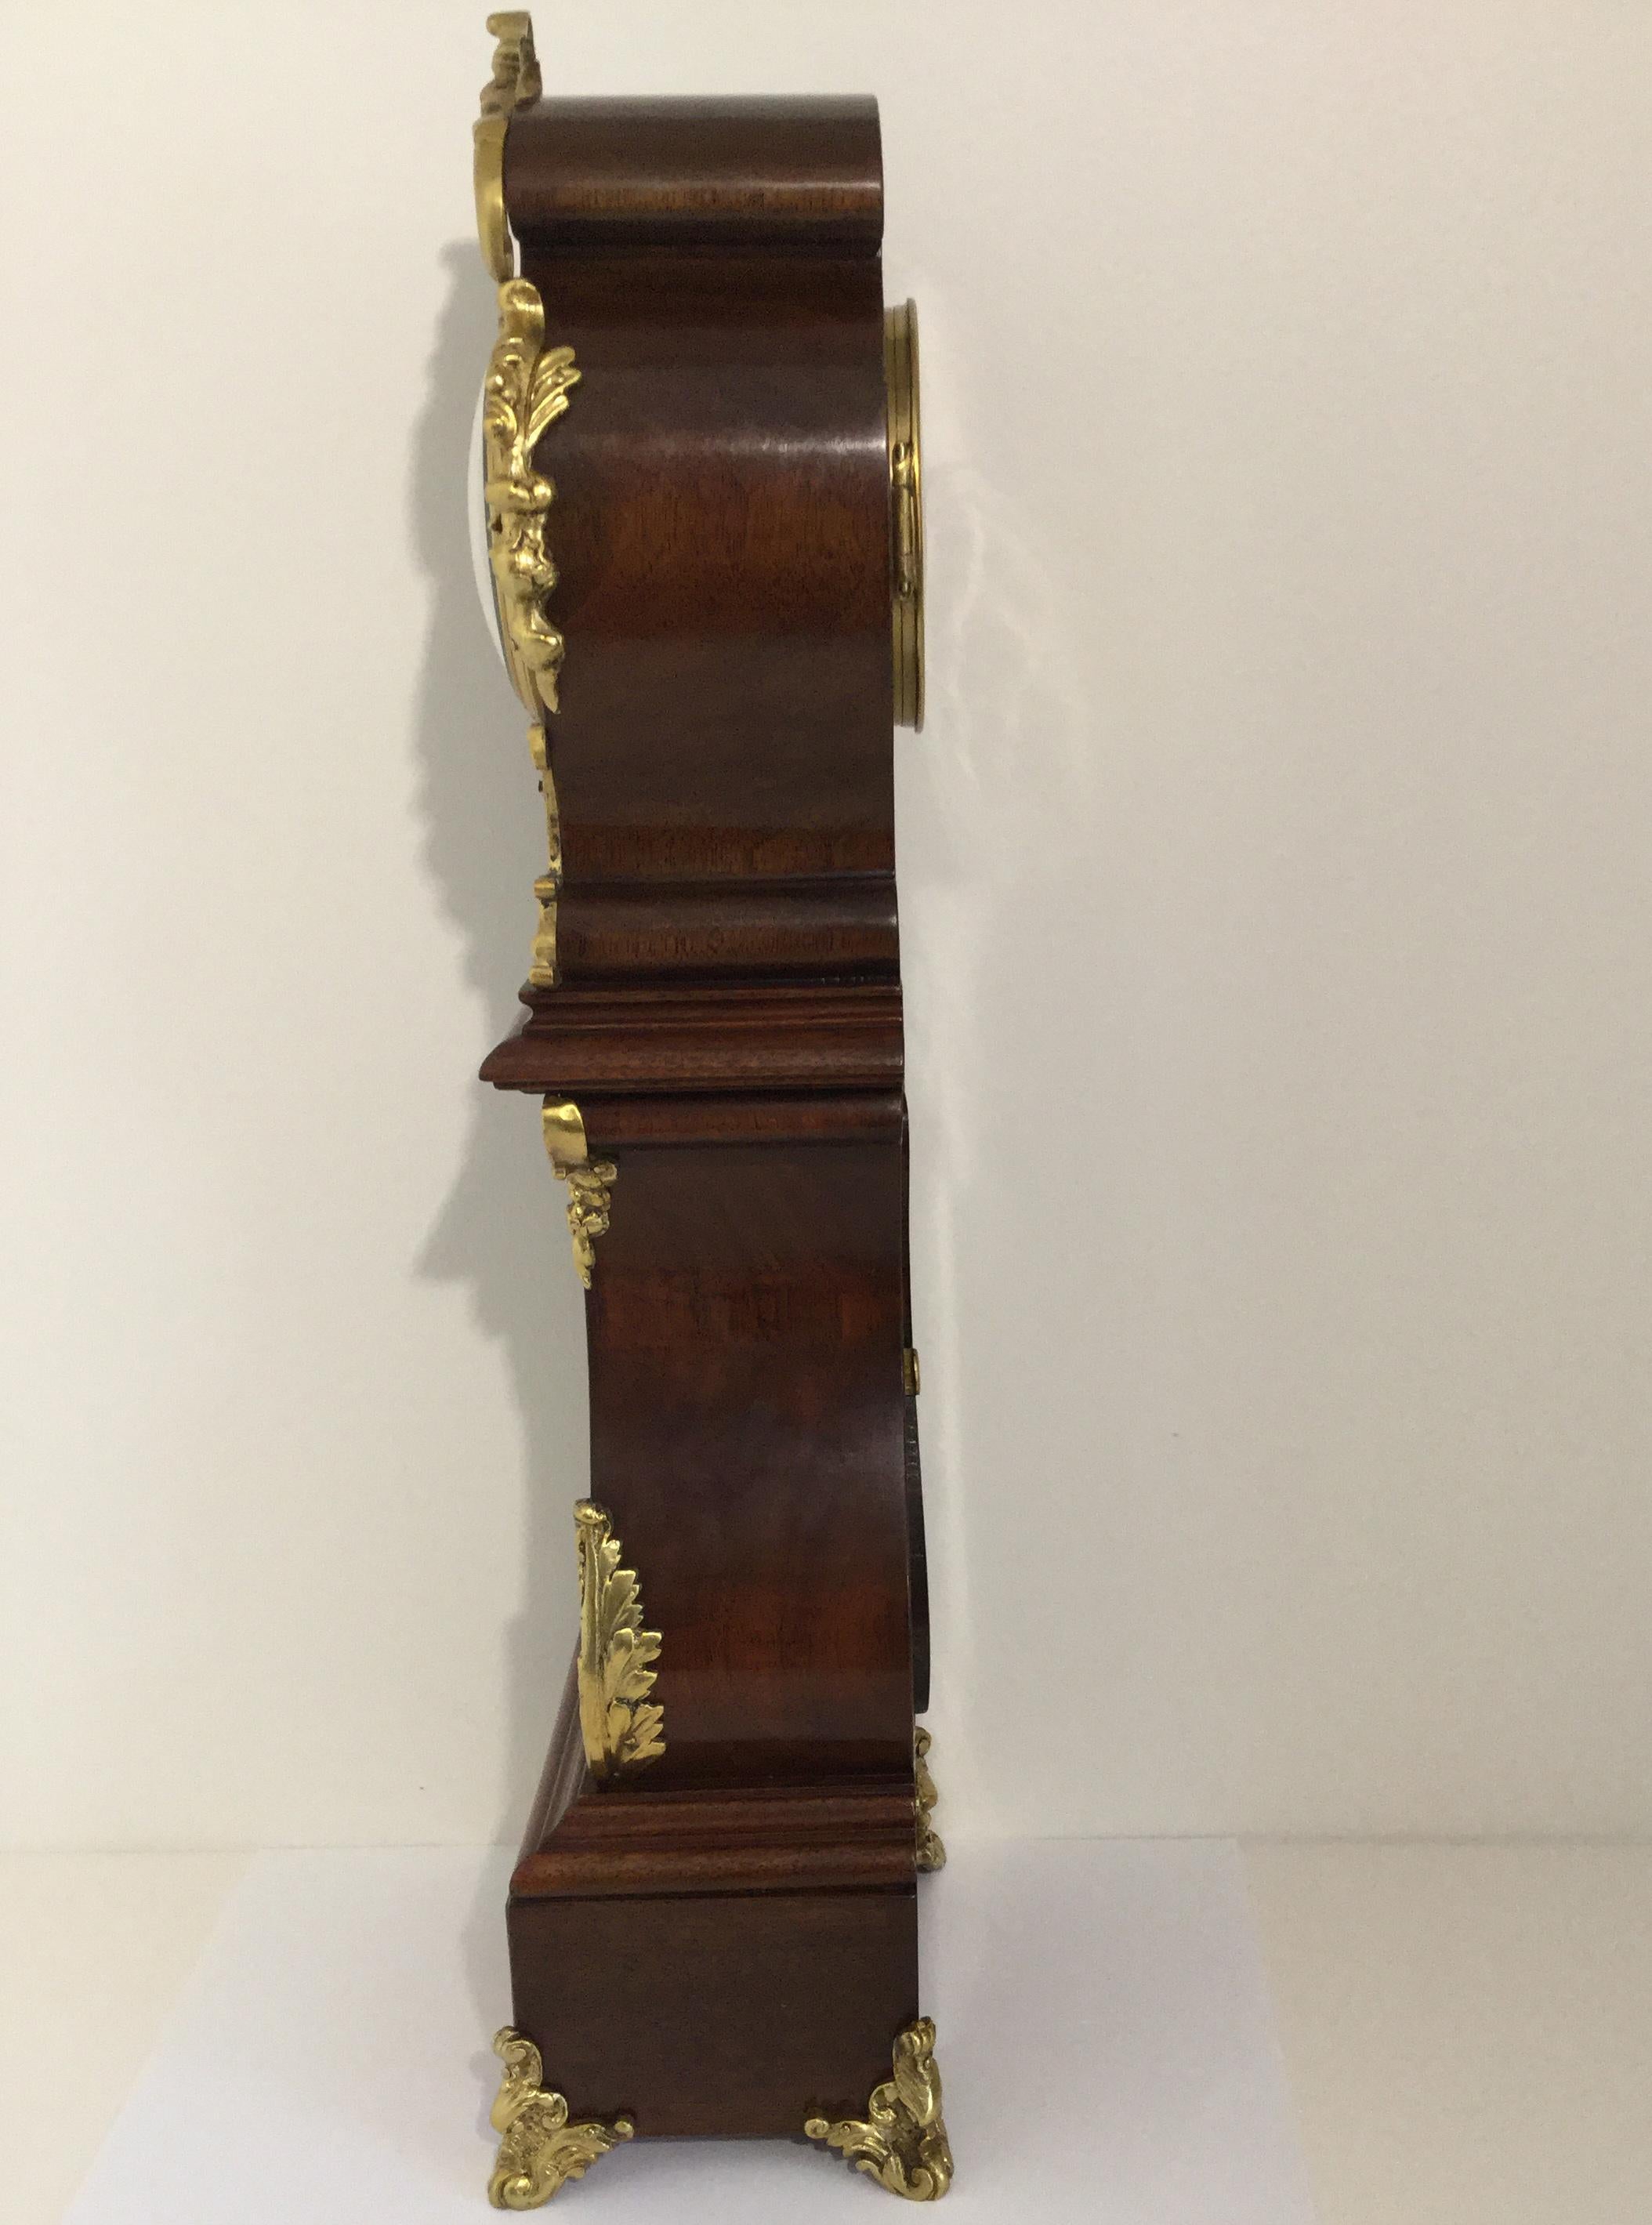 Eine attraktive Miniatur-Standuhr im Rokoko-Stil, um 1870. Das taillierte Gehäuse aus poliertem Mahagoni ist mit dekorativen Messingbeschlägen verziert. Das hochwertige, segmentierte Keramikzifferblatt mit römischen Ziffern und Minutenmarkierungen,